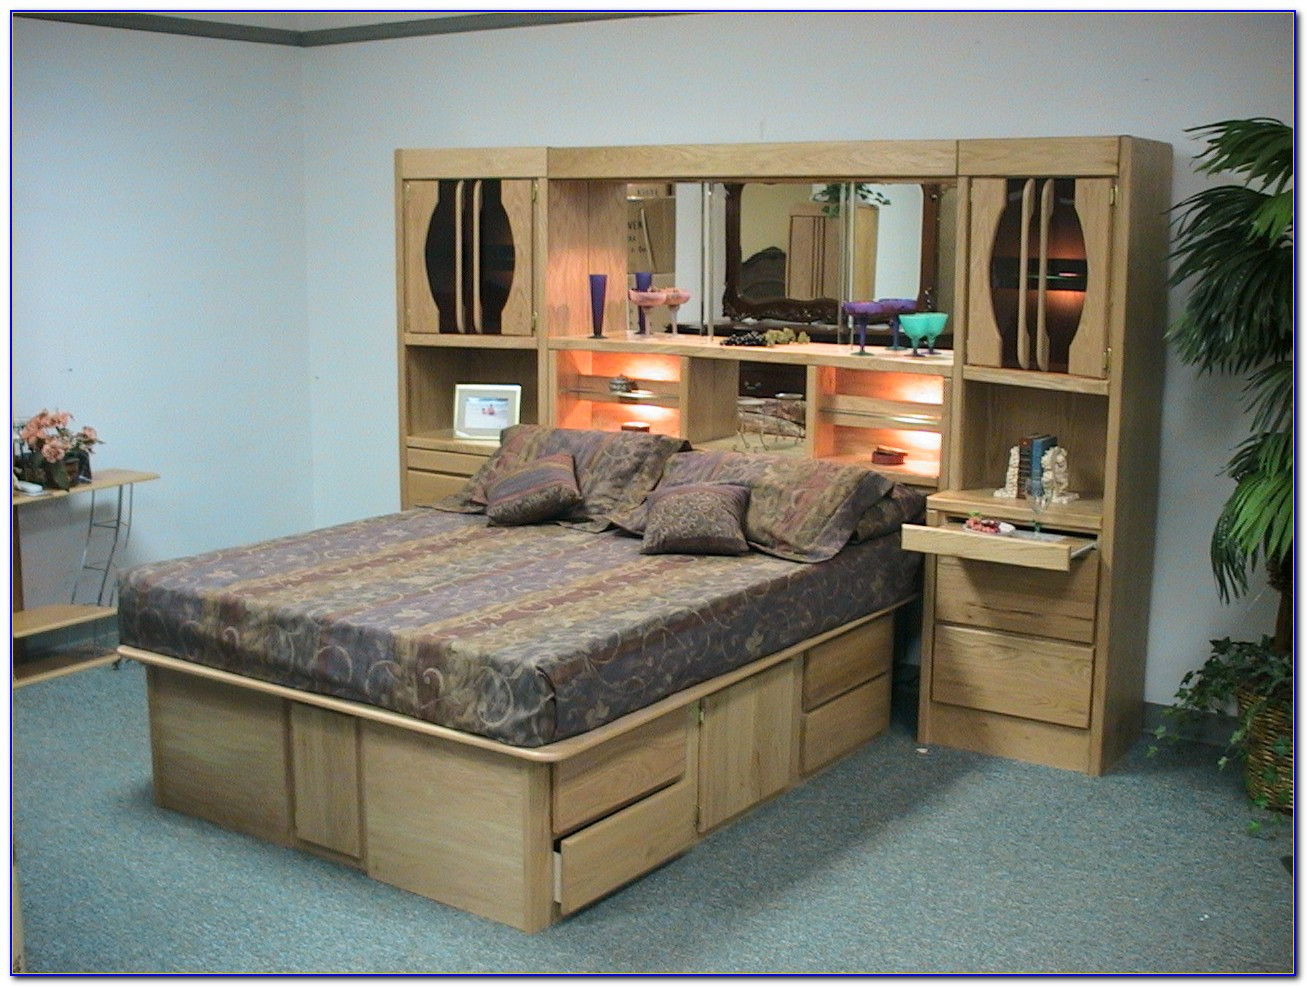 Wall Unit Bedroom Furniture
 Oak Wall Unit Bedroom Set Home Design Ideas Sets